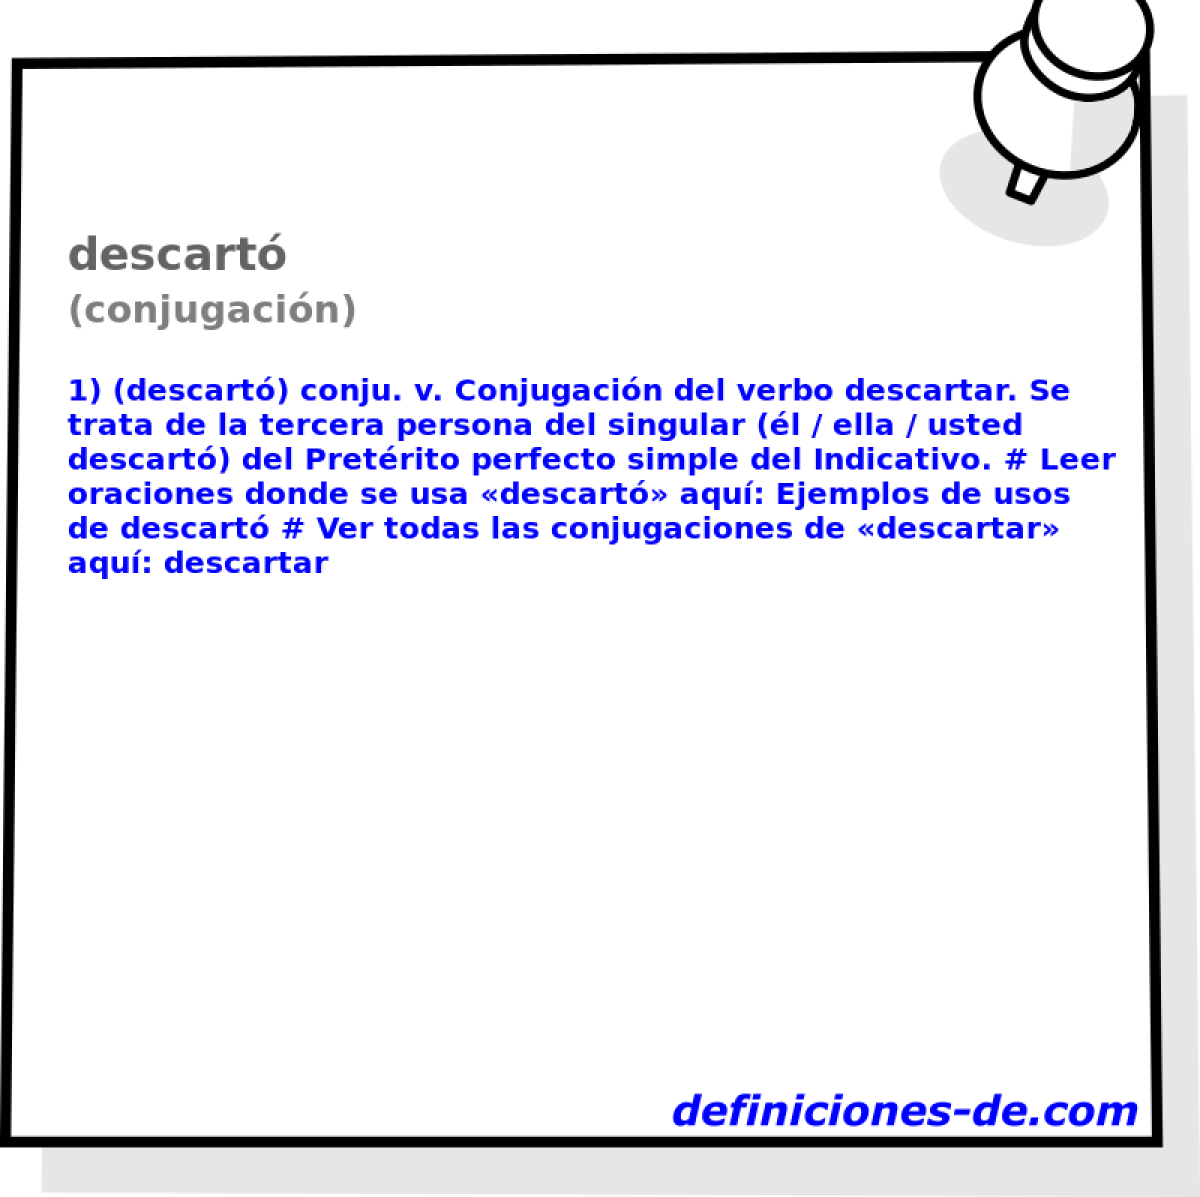 descart (conjugacin)